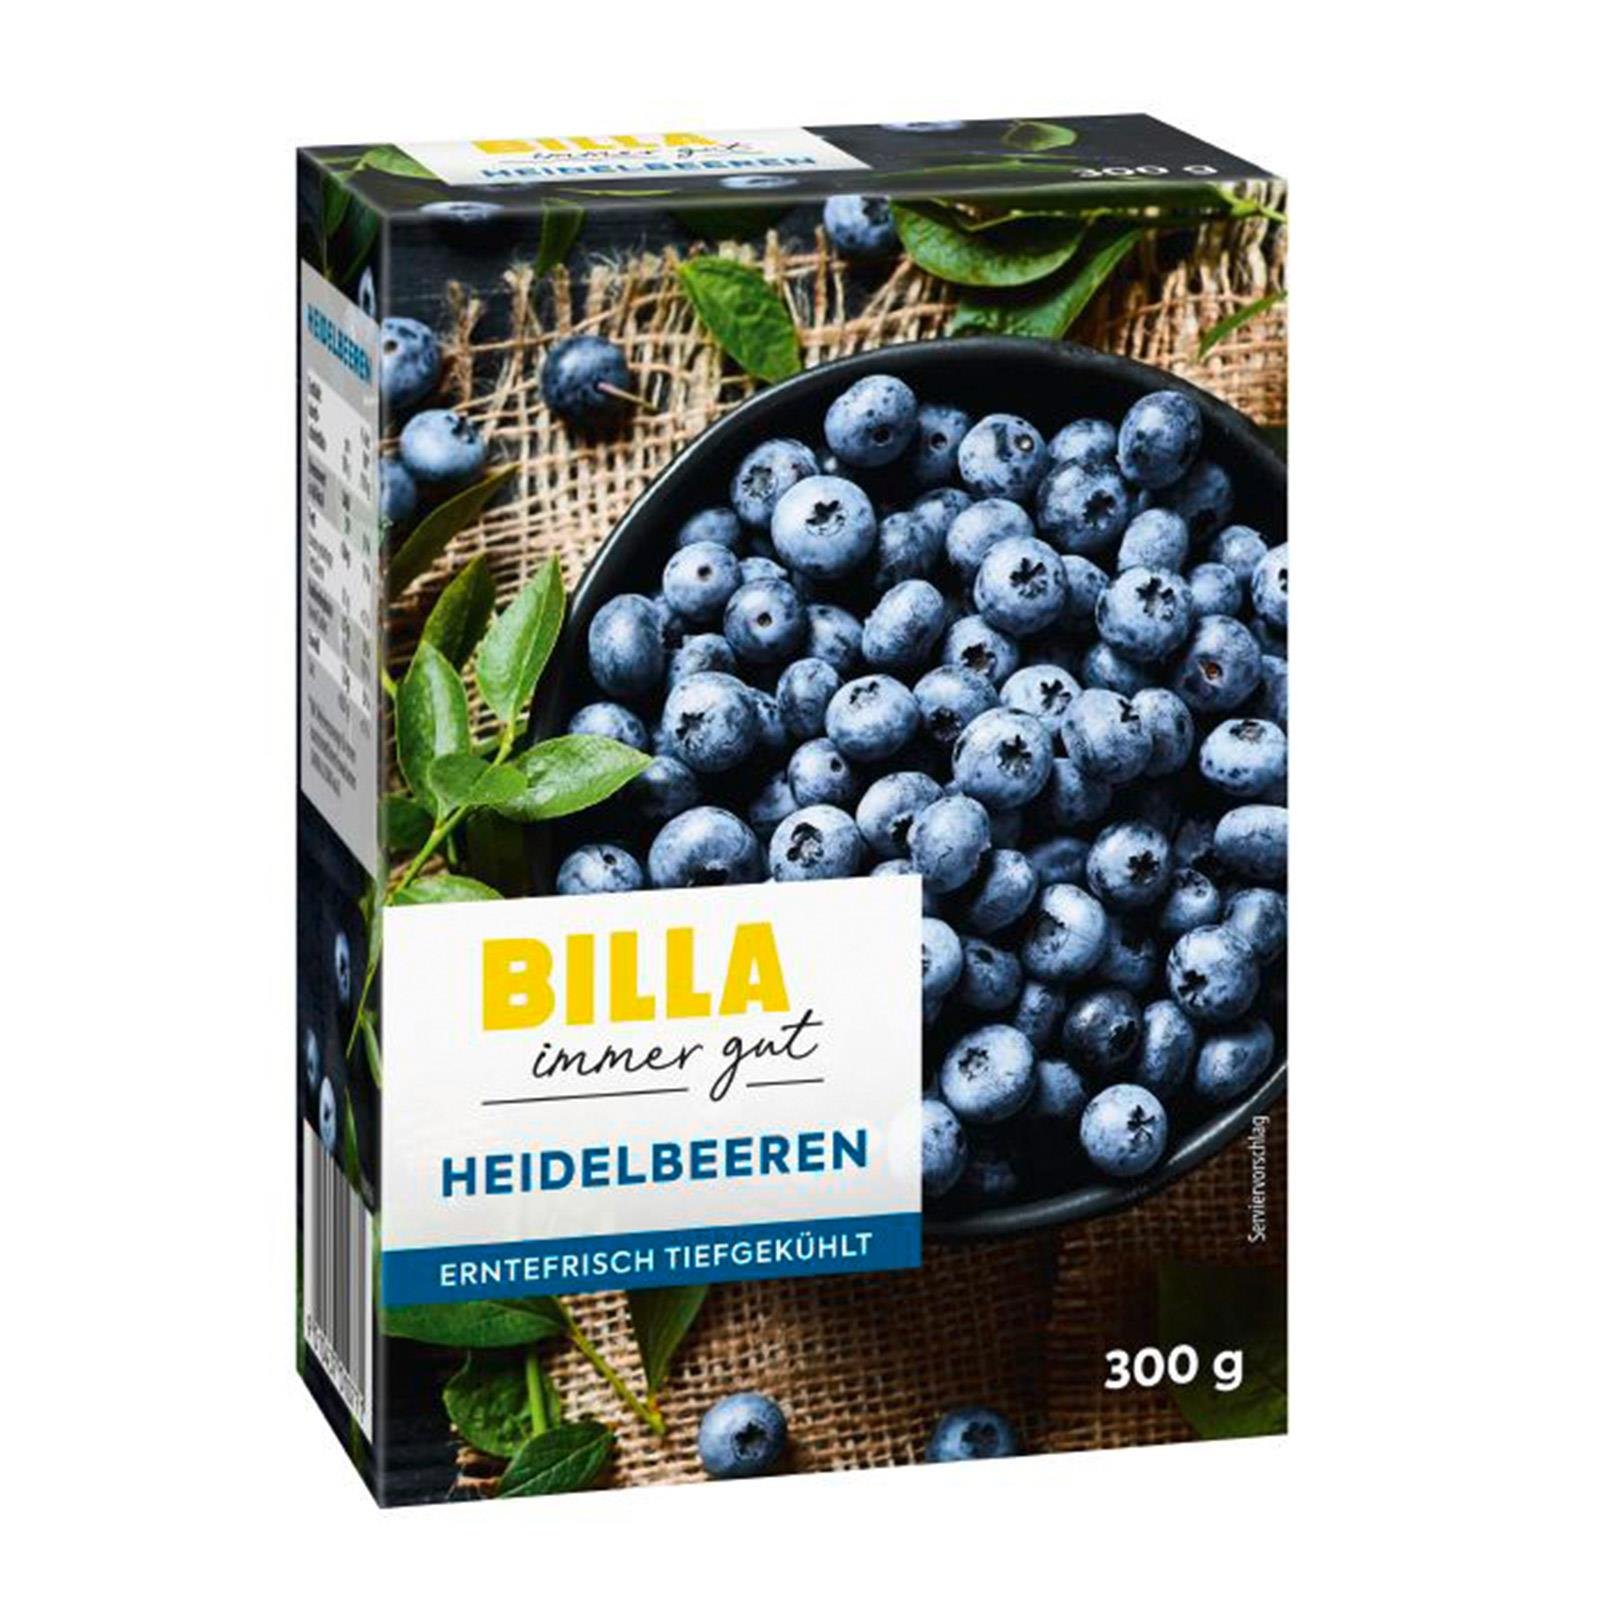 BILLA BILLA Online Heidelbeeren Shop |